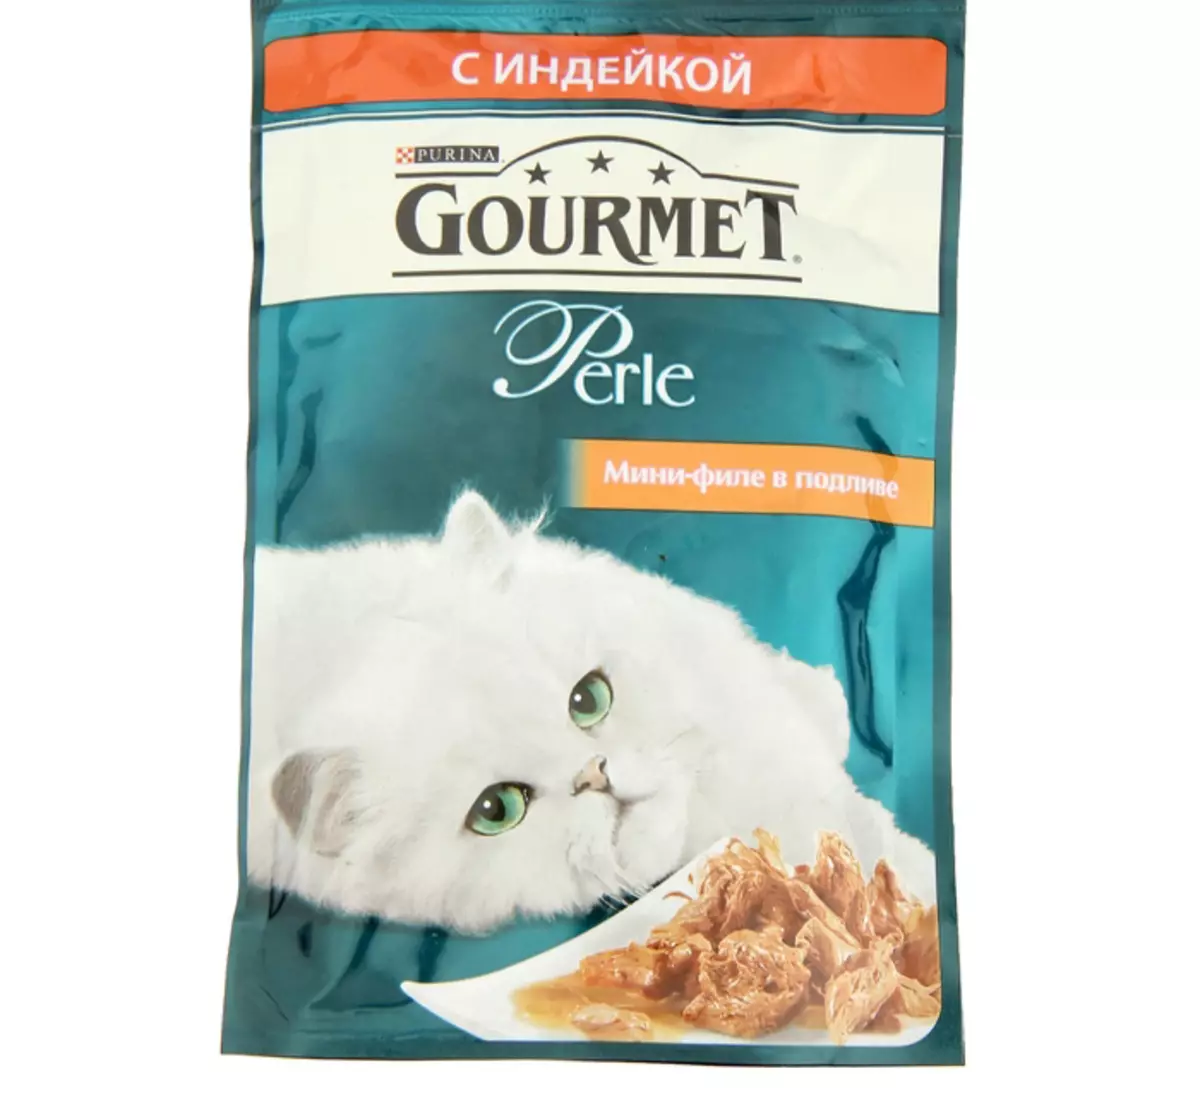 Gourmet: Cat Feed ug Purina Kittens, basa nga mga pates ug uban pang mga feline de lata nga pagkaon, ilang komposisyon, mga review 22711_32